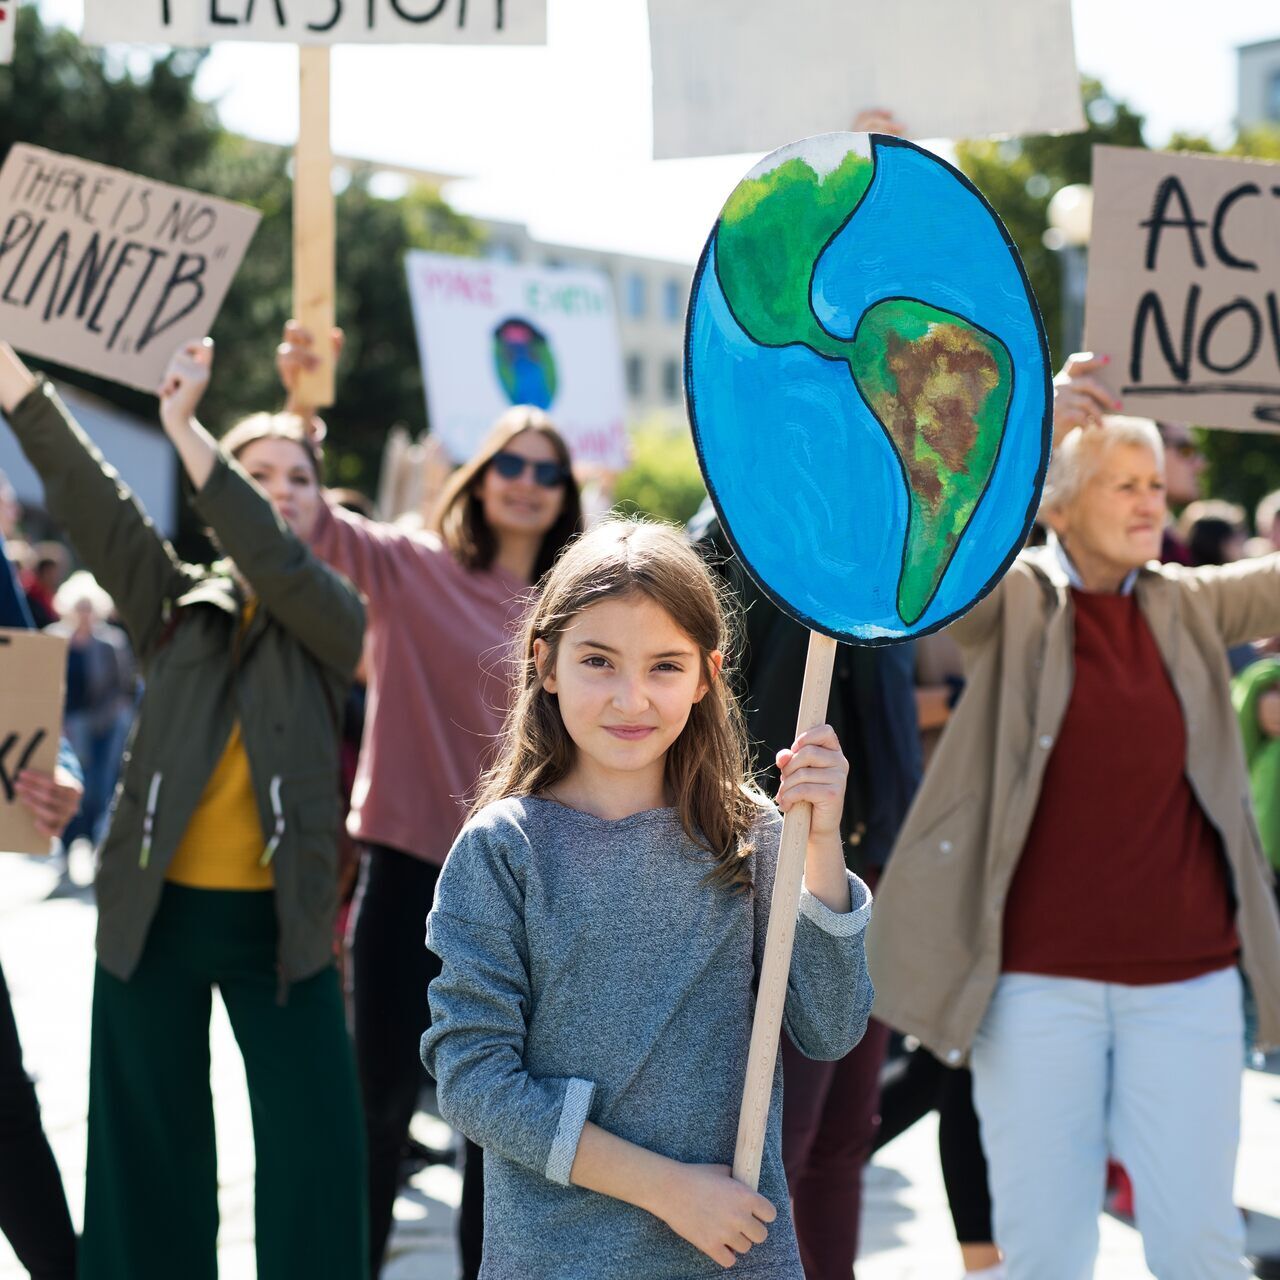 Cambiamento climatico: gli attivisti chiedono interventi rapidissimi